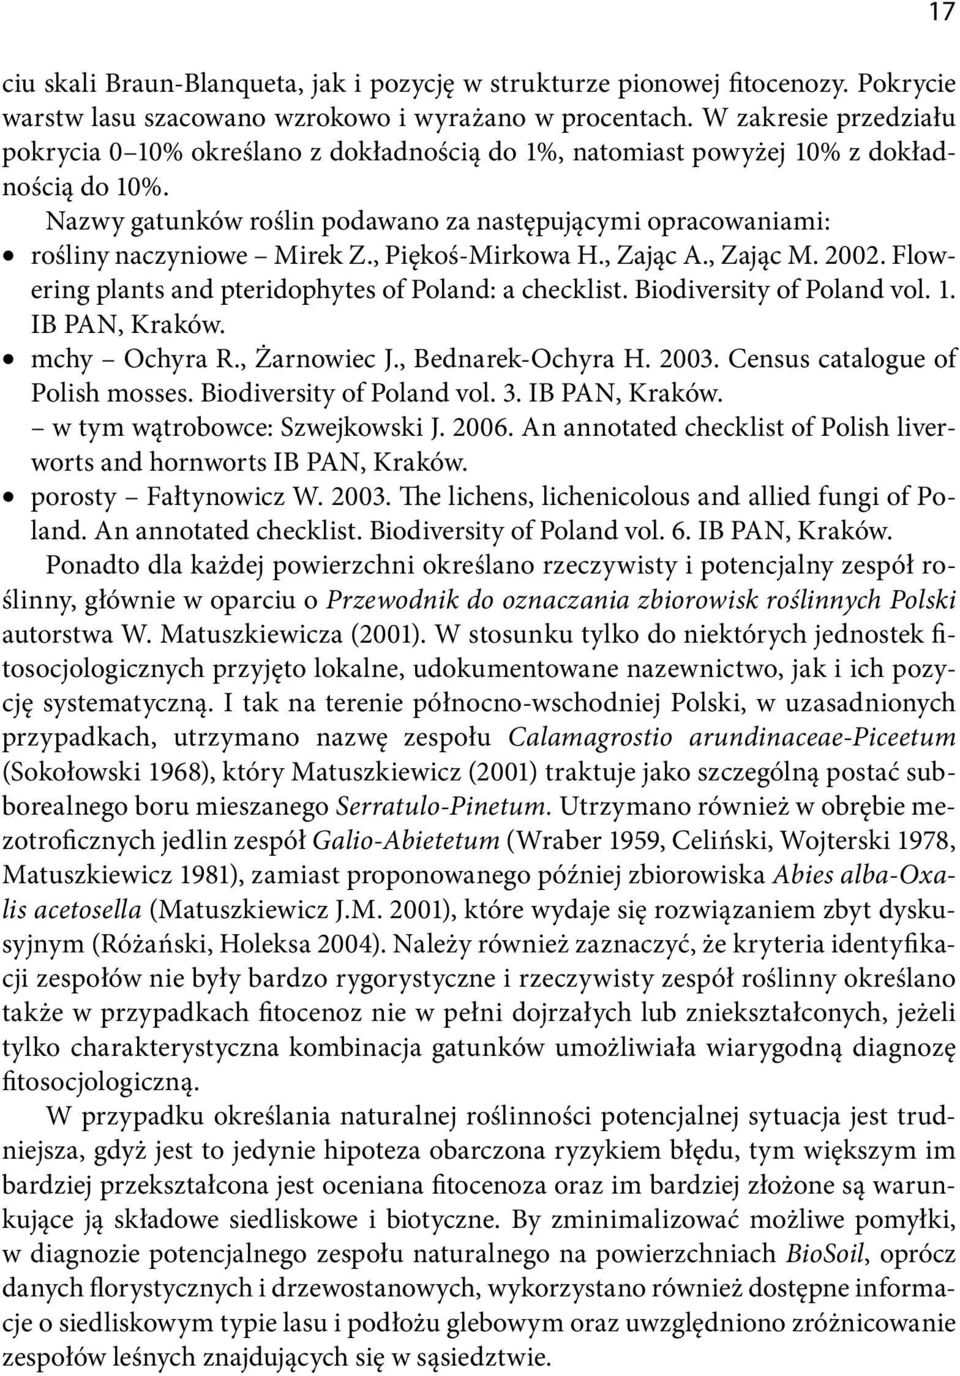 Nazwy gatunków roślin podawano za następującymi opracowaniami: rośliny naczyniowe Mirek Z., Piękoś-Mirkowa H., Zając A., Zając M. 2002. Flowering plants and pteridophytes of Poland: a checklist.